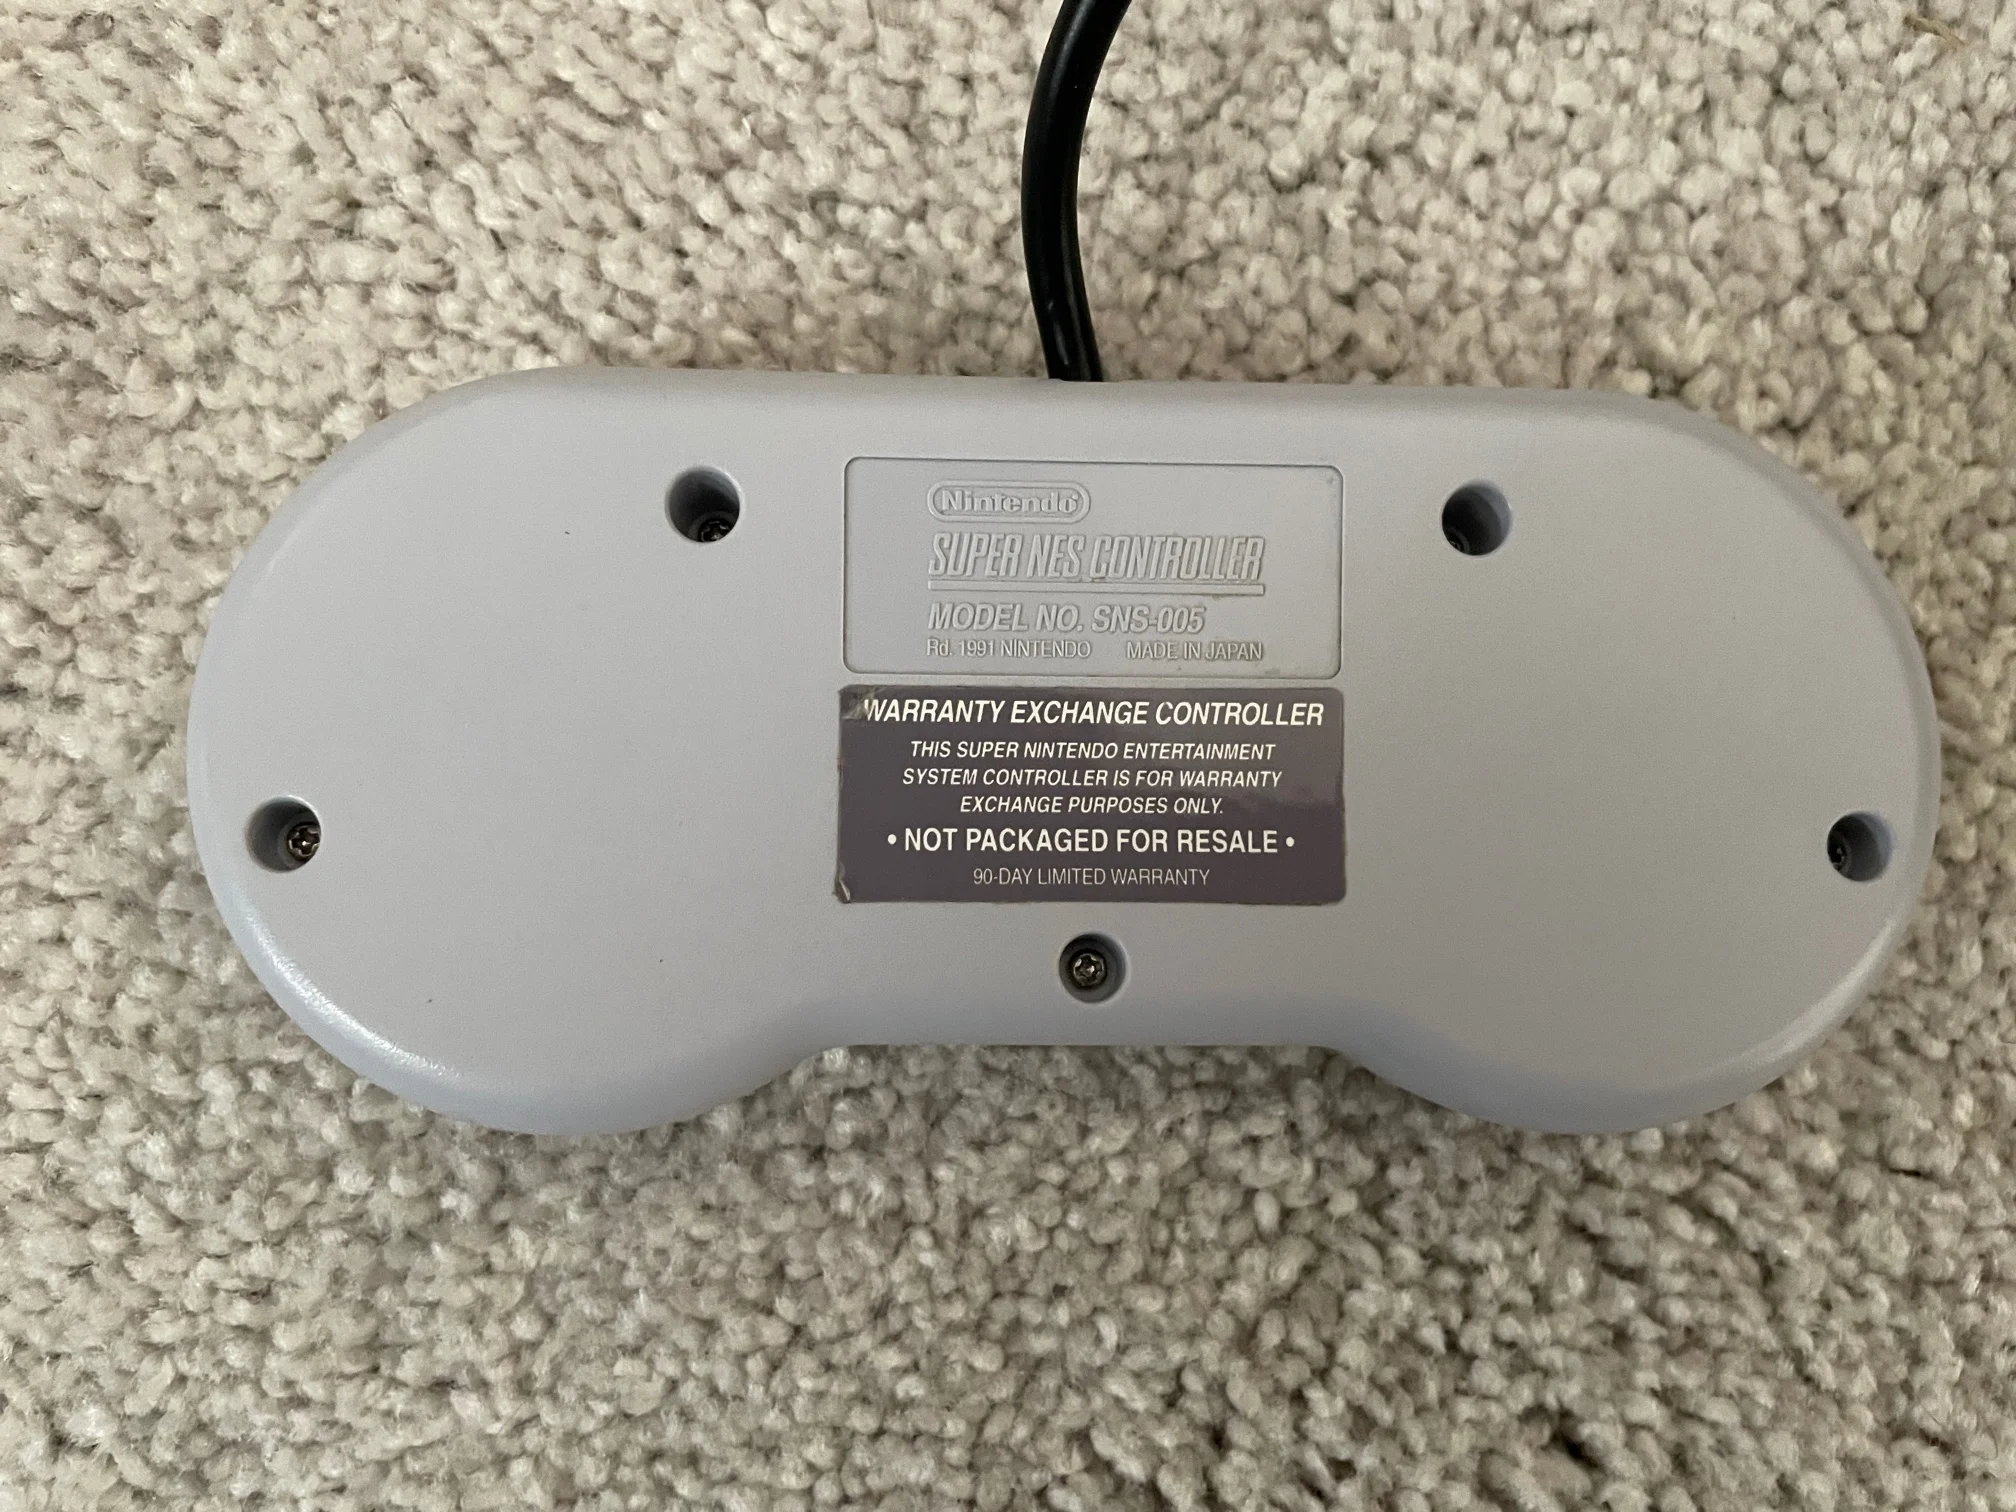  Super NES Warranty Exchange Controller